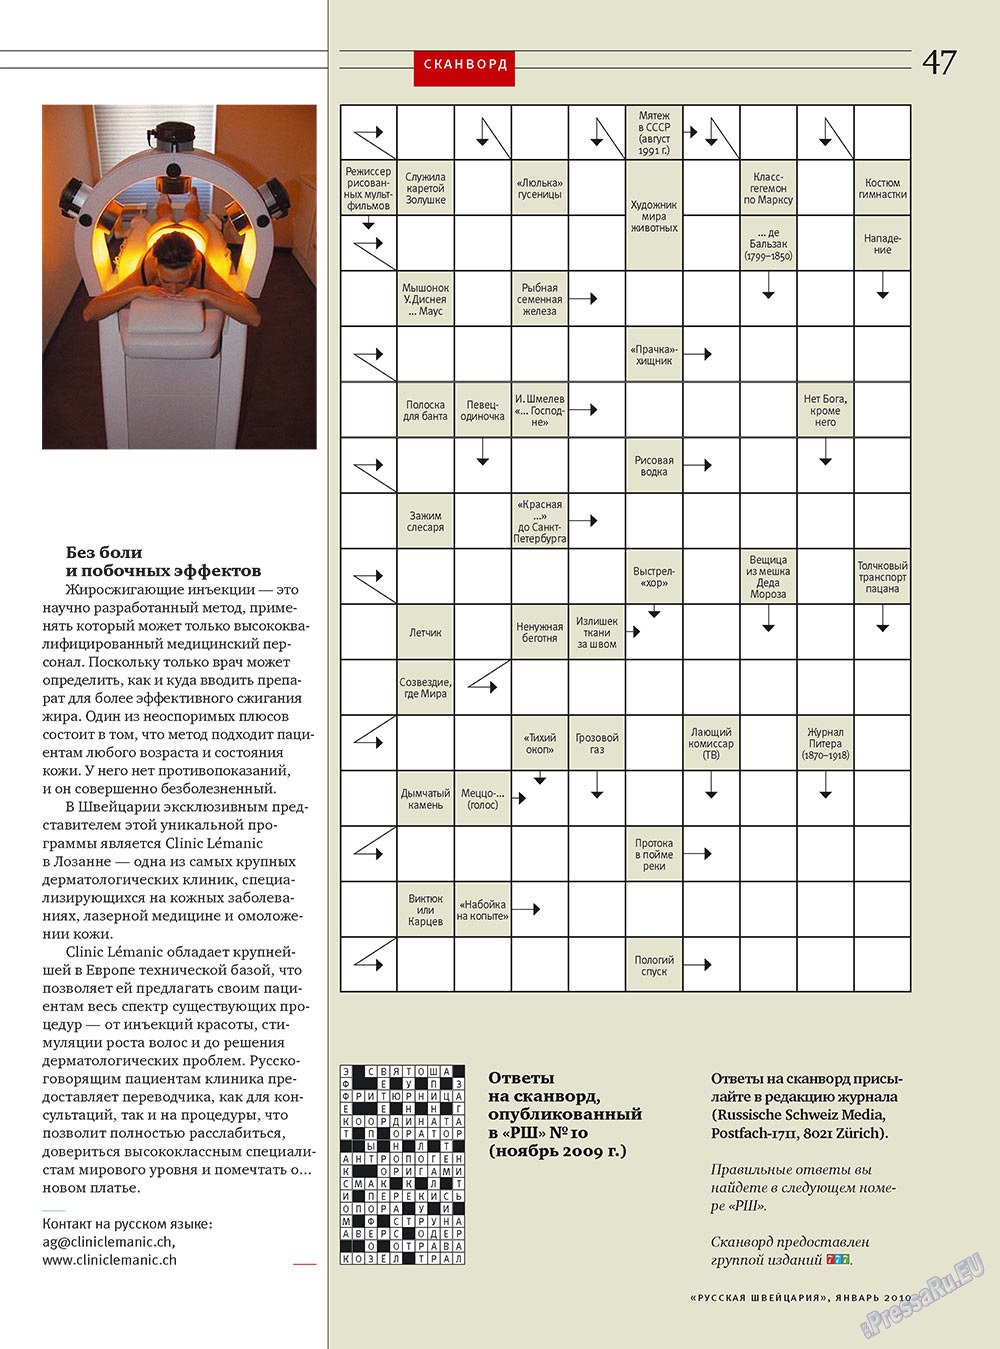 Russkaja Schweizaria (Zeitschrift). 2010 Jahr, Ausgabe 1, Seite 47